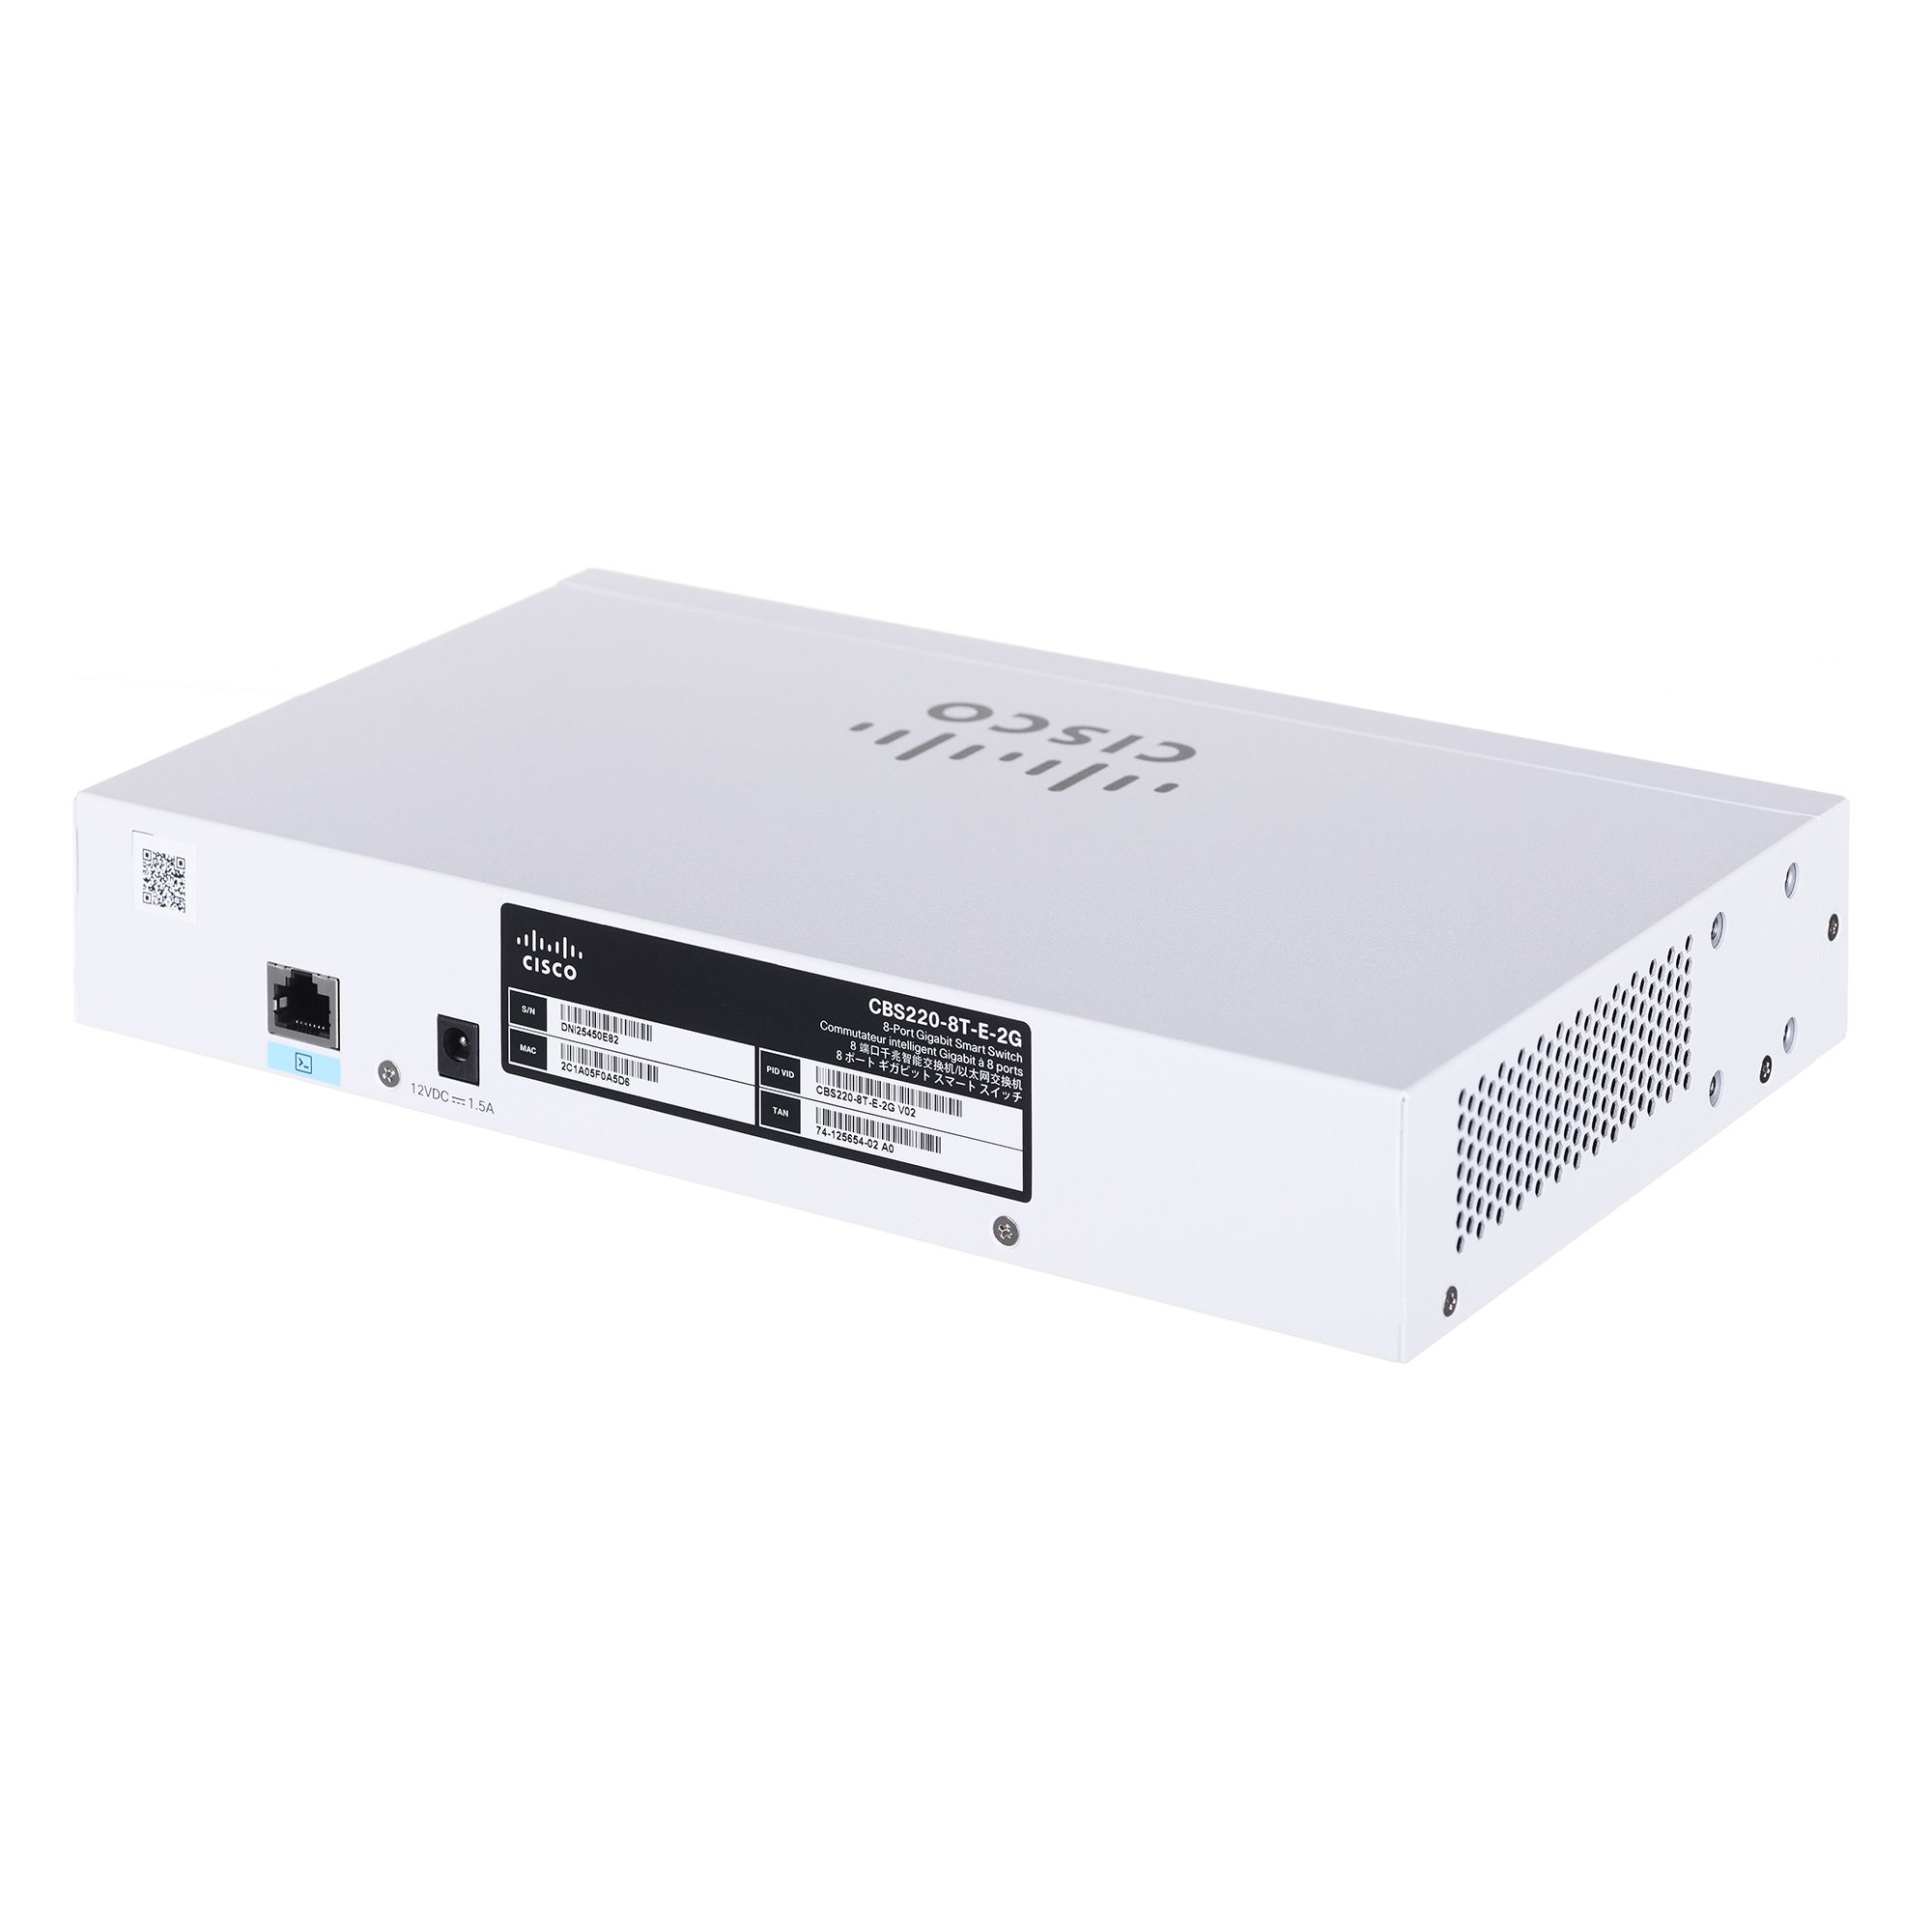 Cisco CBS220-8T-E-2G Managed L2 Gigabit Ethernet (10/100/1000) 1U White_3